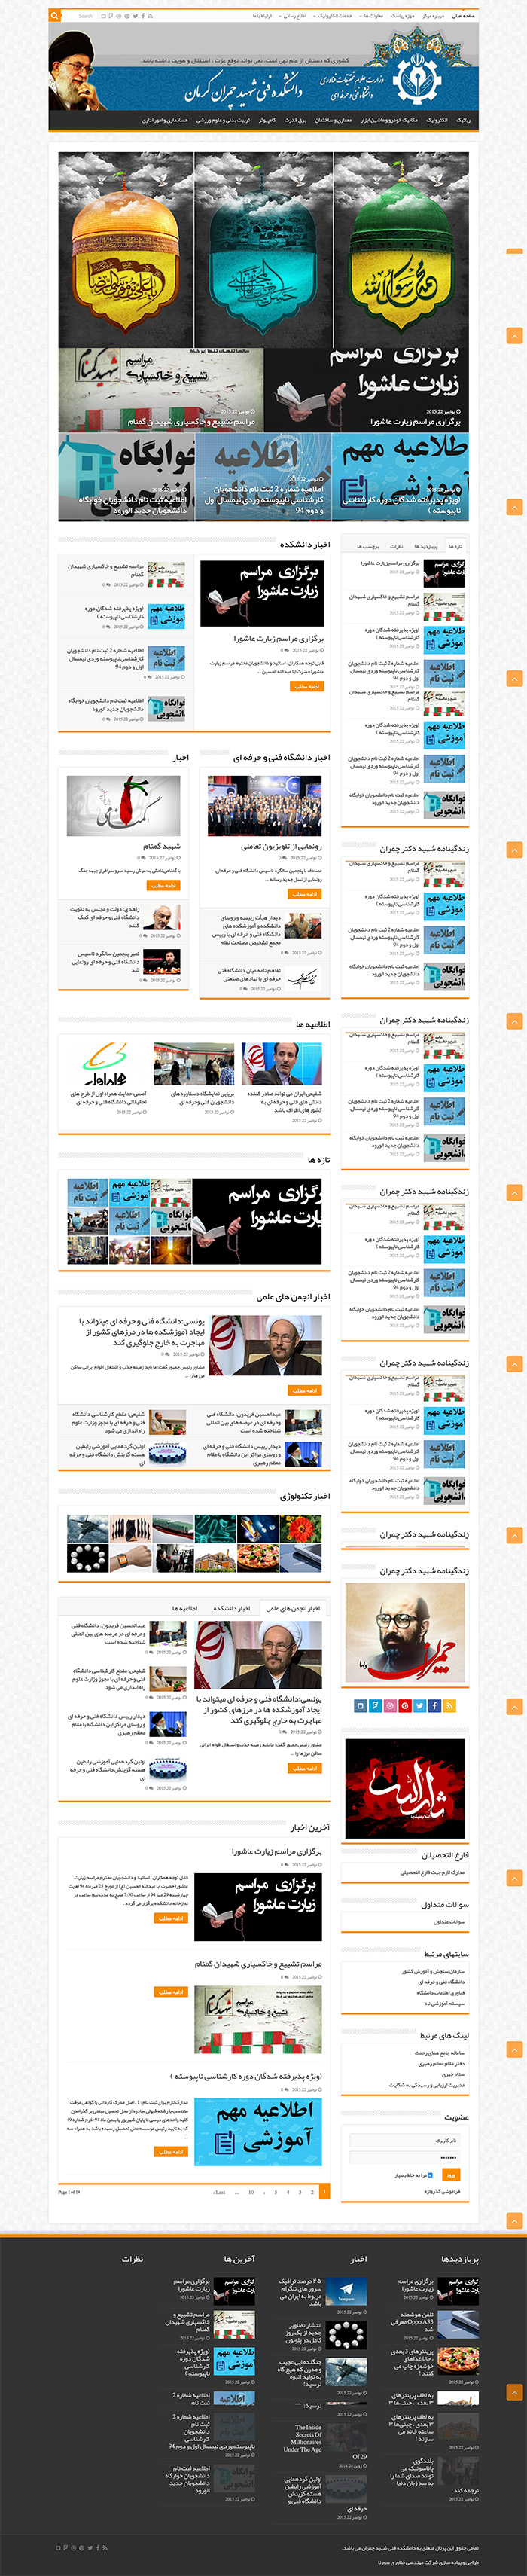 طراحی سایت دانشگاه فنی مهندسی شهید چمران توسط شرکت طراحی سایت سورنا در کرمان